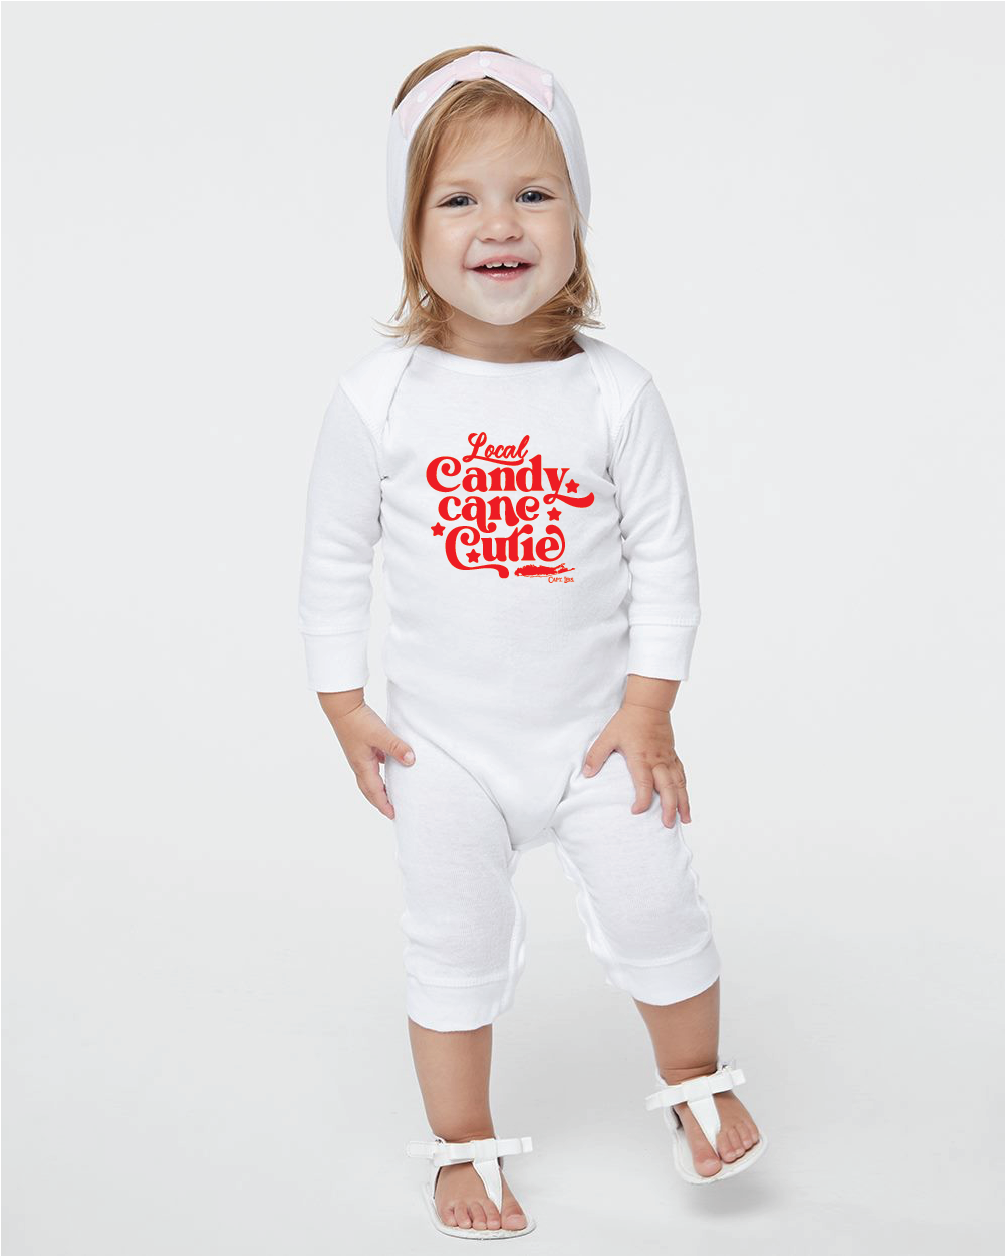 Candy Cane Cutie Infant Jumpsuit